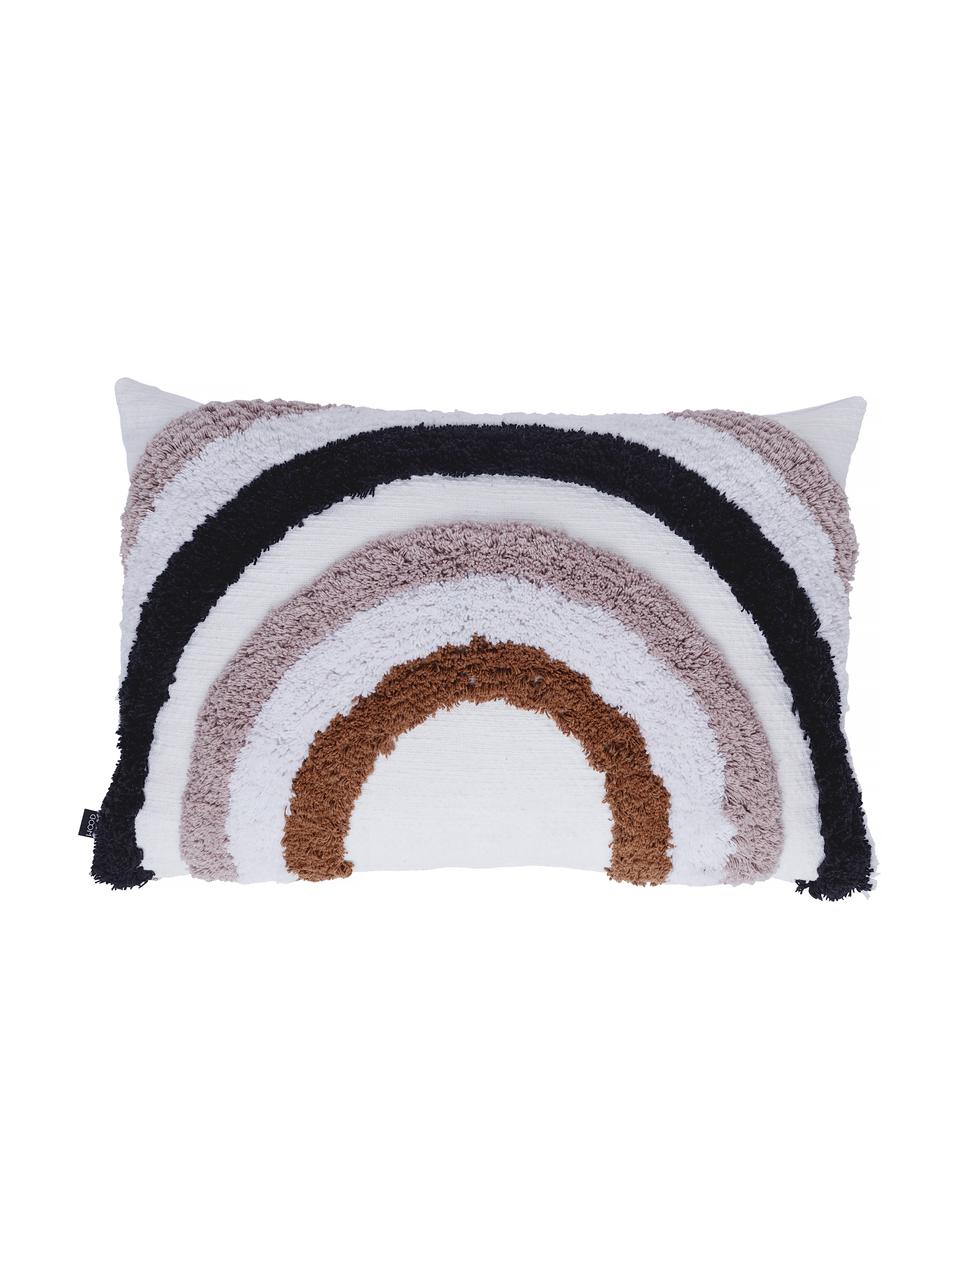 Flauschige Kissenhülle Arco mit Regenbogenmotiv, 100% Baumwolle, Weiß, Altrosa, Dunkelblau, Braun, 40 x 60 cm